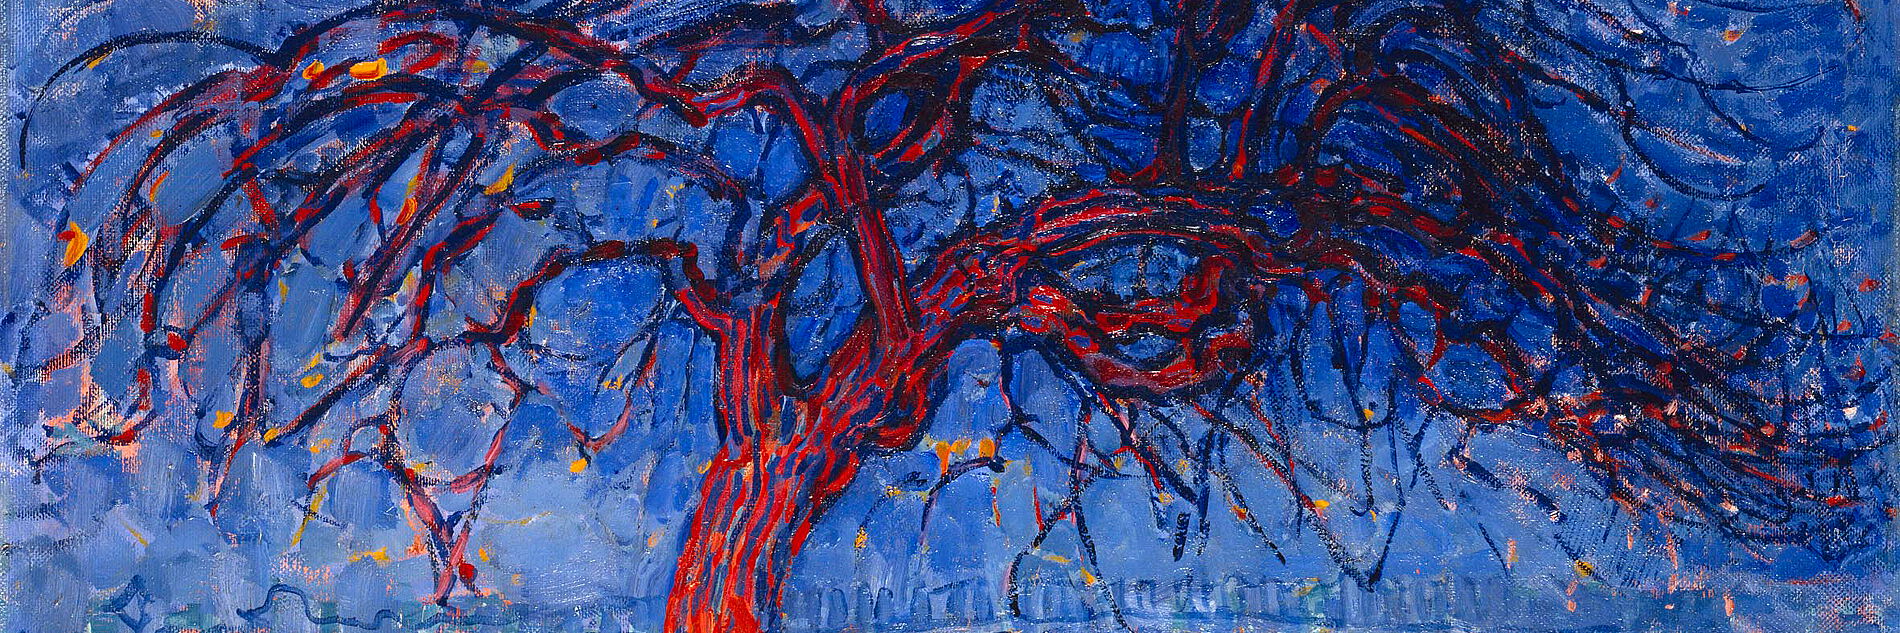 Piet Mondrian - Der rote Baum, Öl auf Leinwand, 1908-10